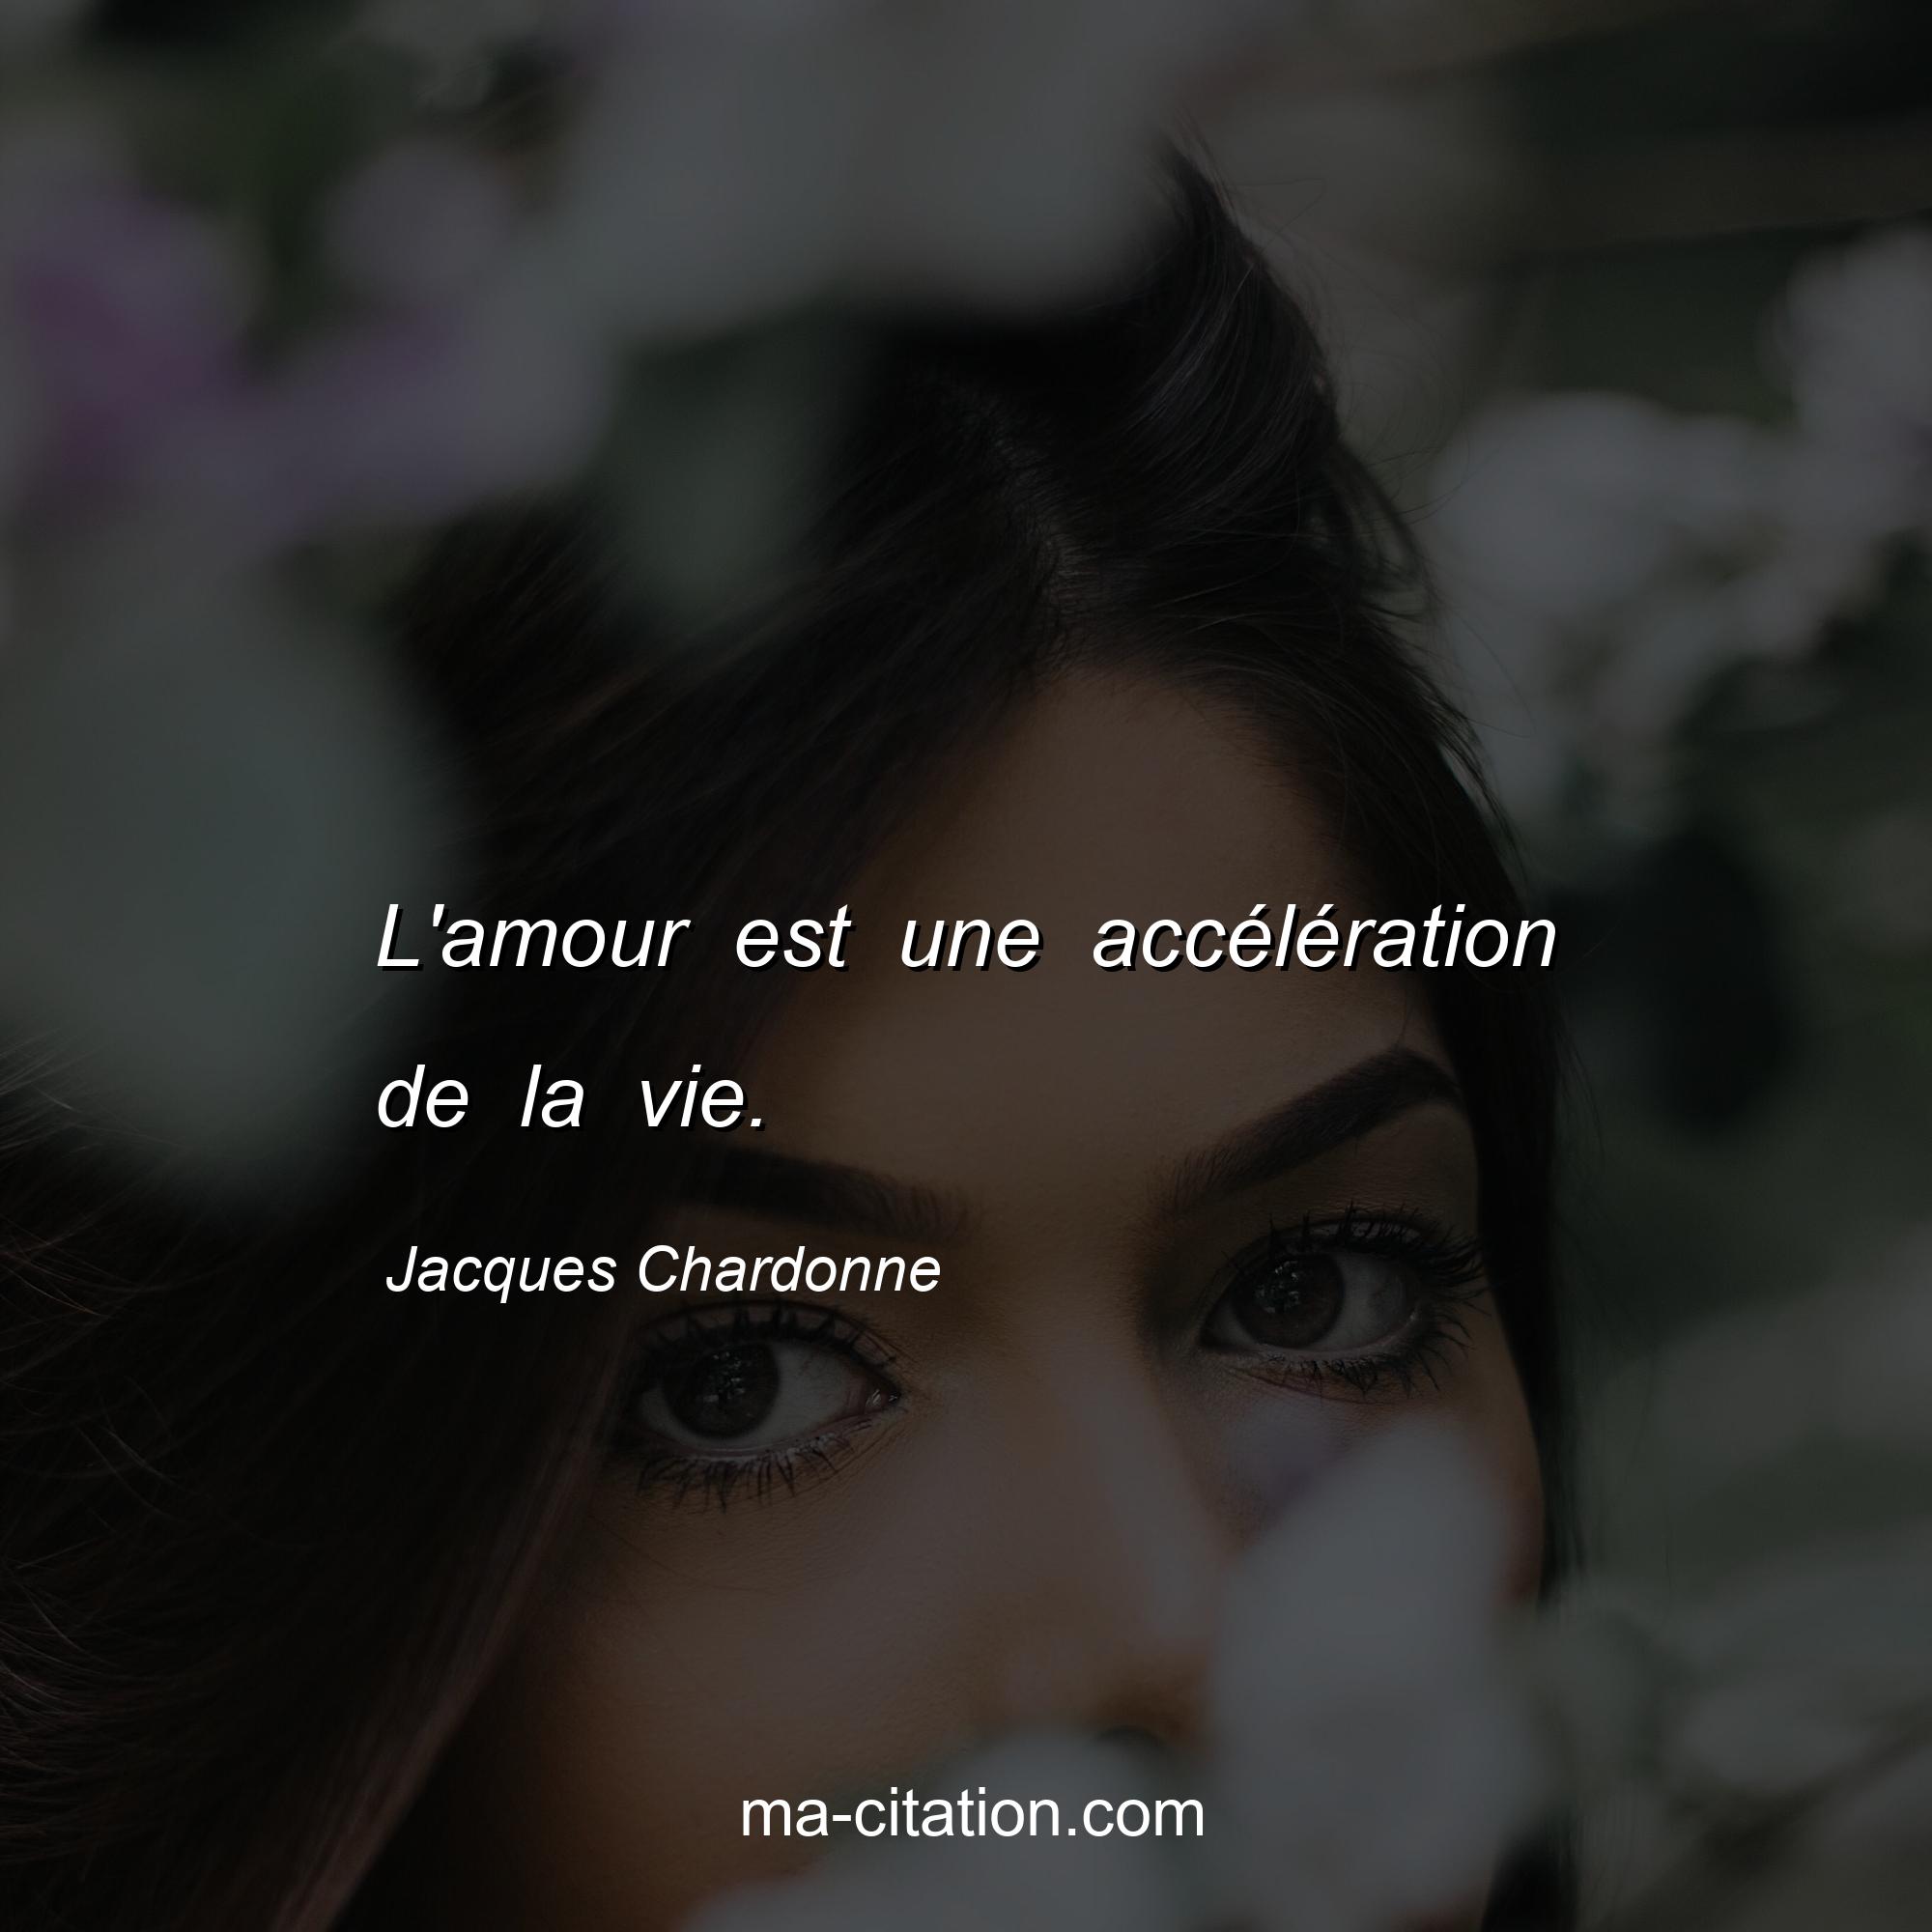 Jacques Chardonne : L'amour est une accélération de la vie.